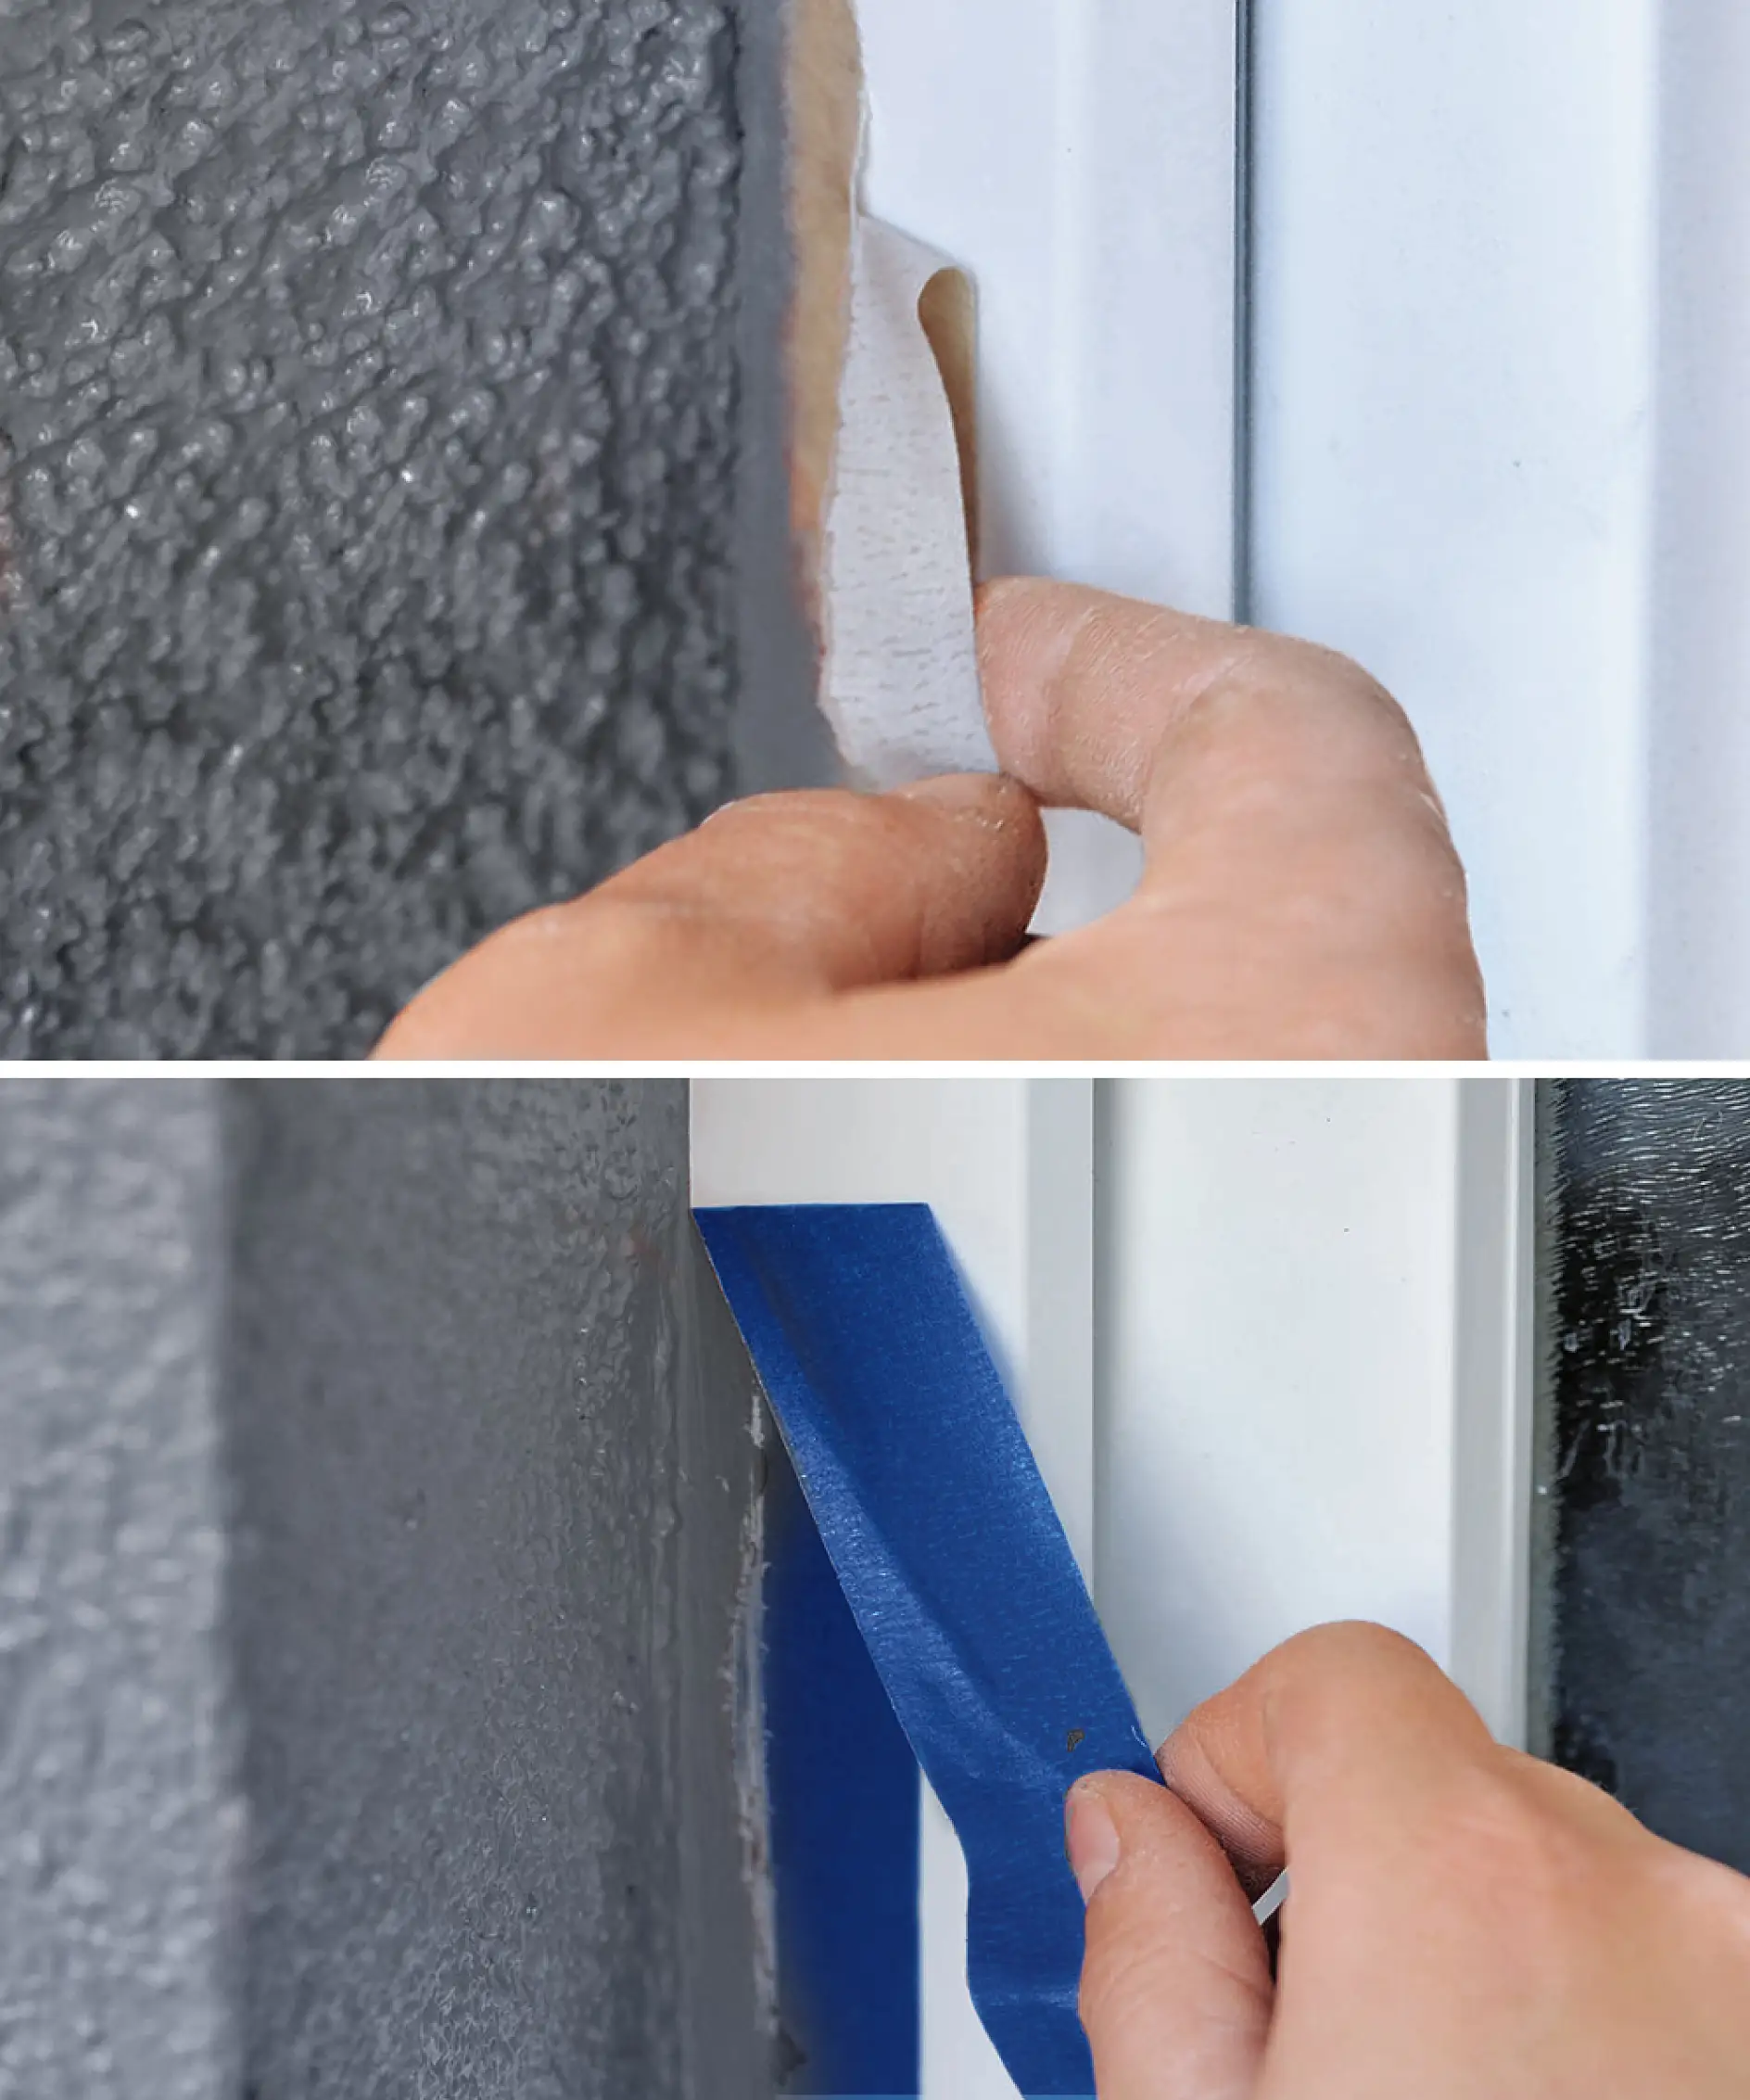 Jeigu naudojama netinkama juosta, maskuoti PVC langus gali būti sudėtinga.